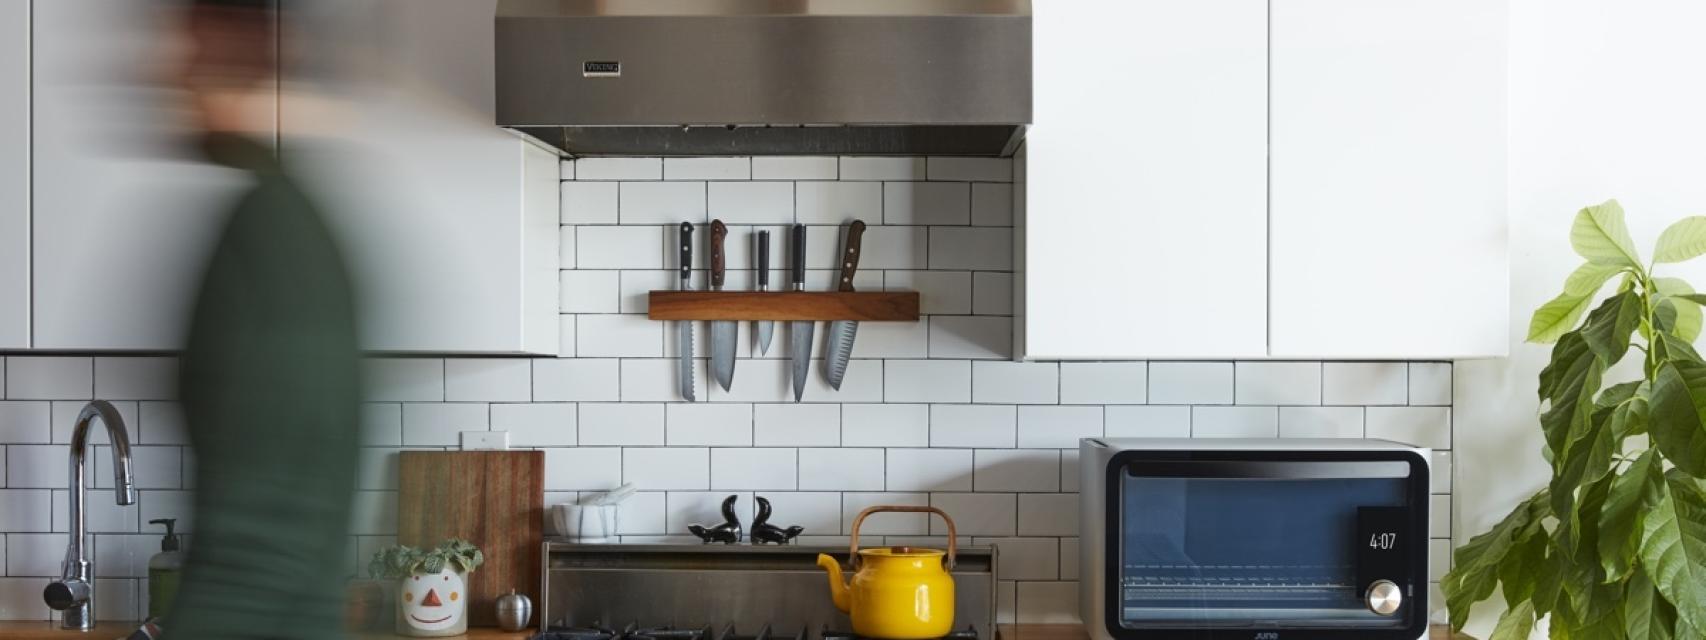 Diez accesorios inteligentes que necesitas para exprimir al máximo tu cocina